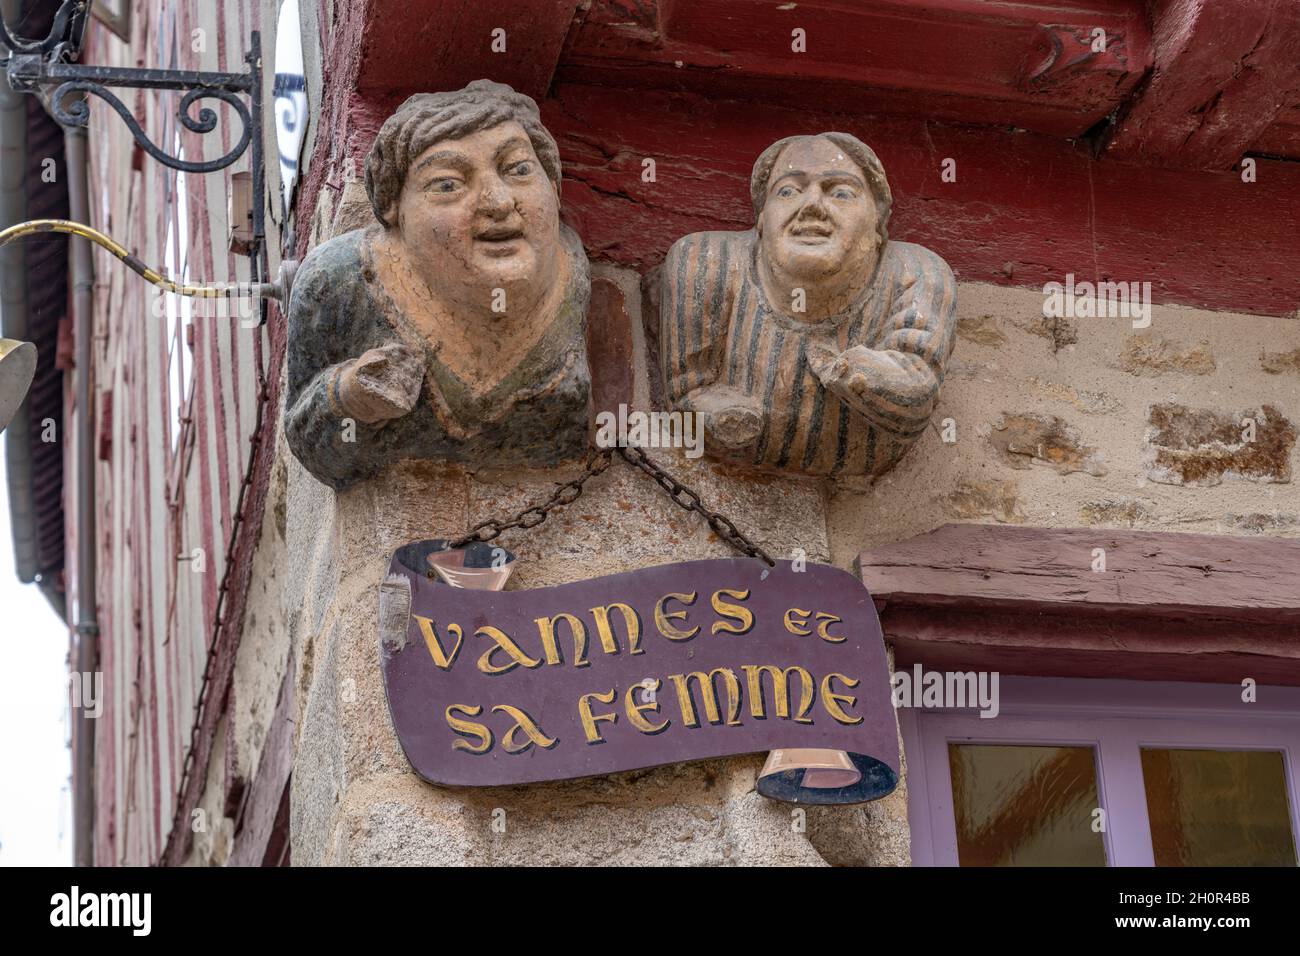 Granit Skulptur Vannes et sa femme - Vannes und seine Frau - aus dem 15. Jahrhundert in der Altstadt von Vannes, Bretagne, Frankreich | Painted gran Stockfoto